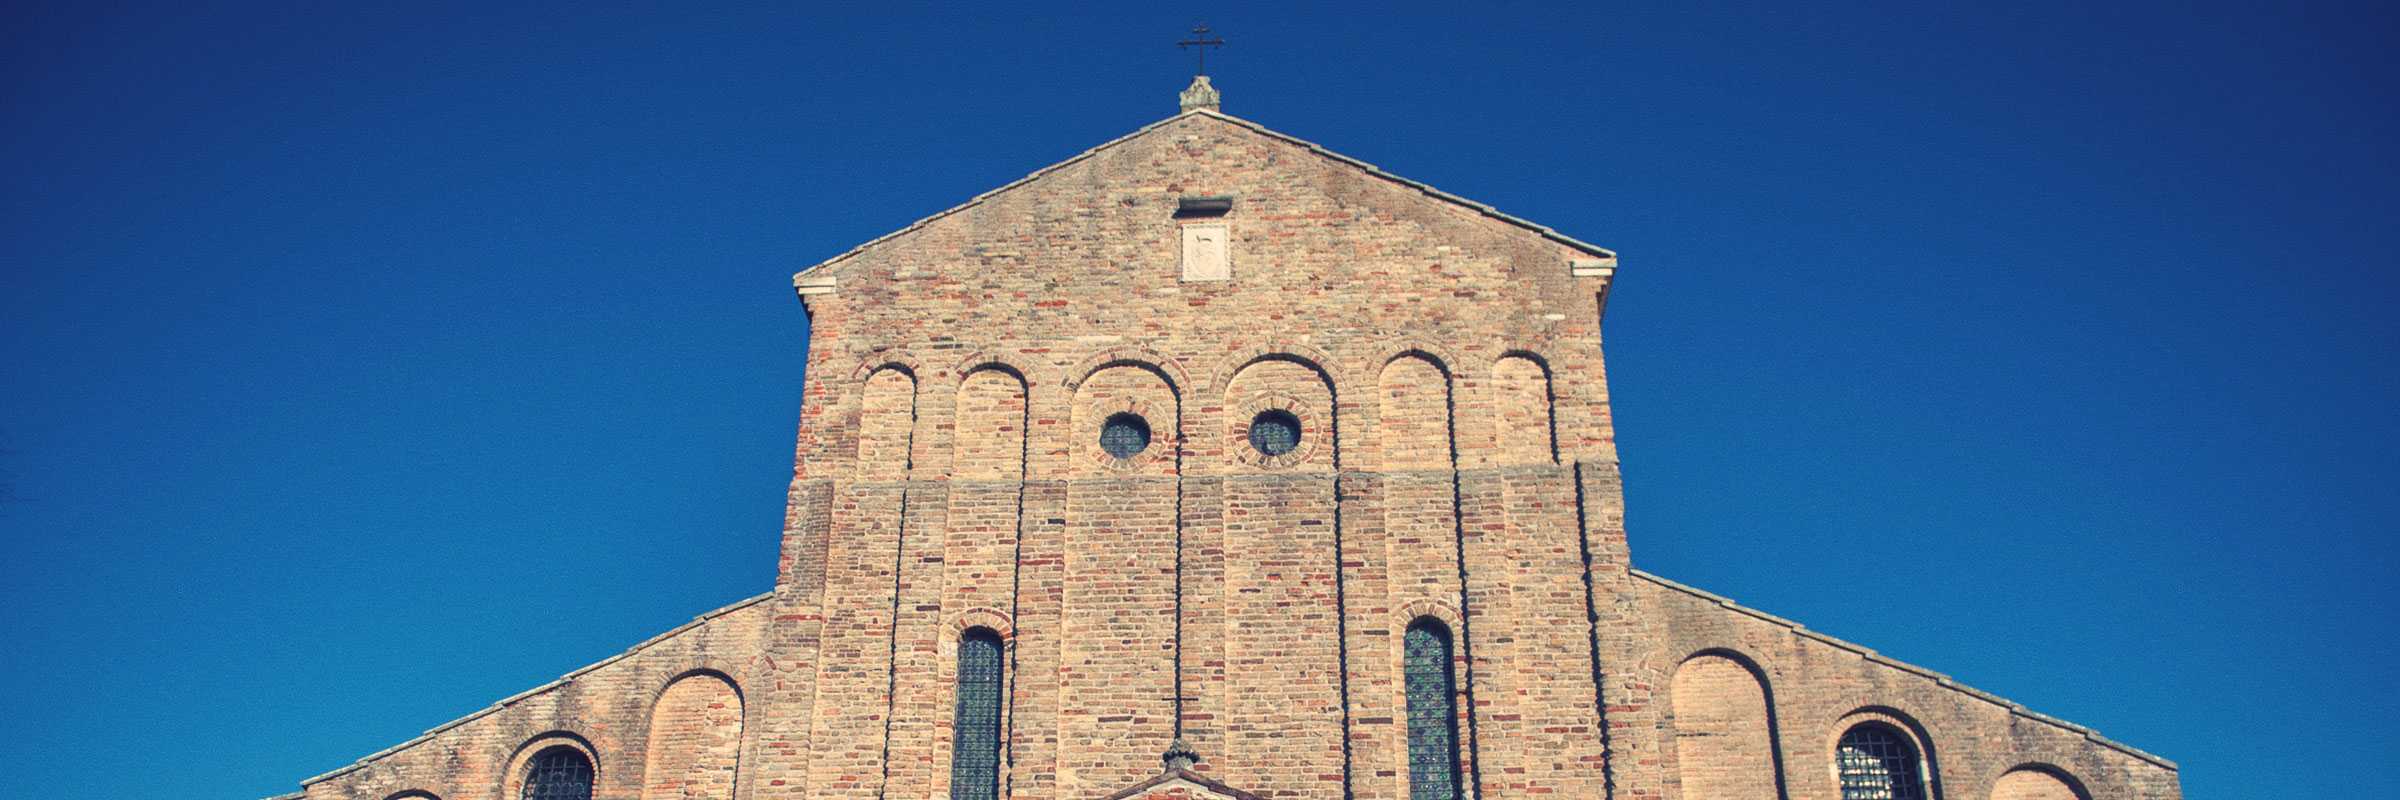 Particolare della facciata della Chiesa di Santa Maria Assunta a Torcello — (Archivio Bazzmann/Venipedia)